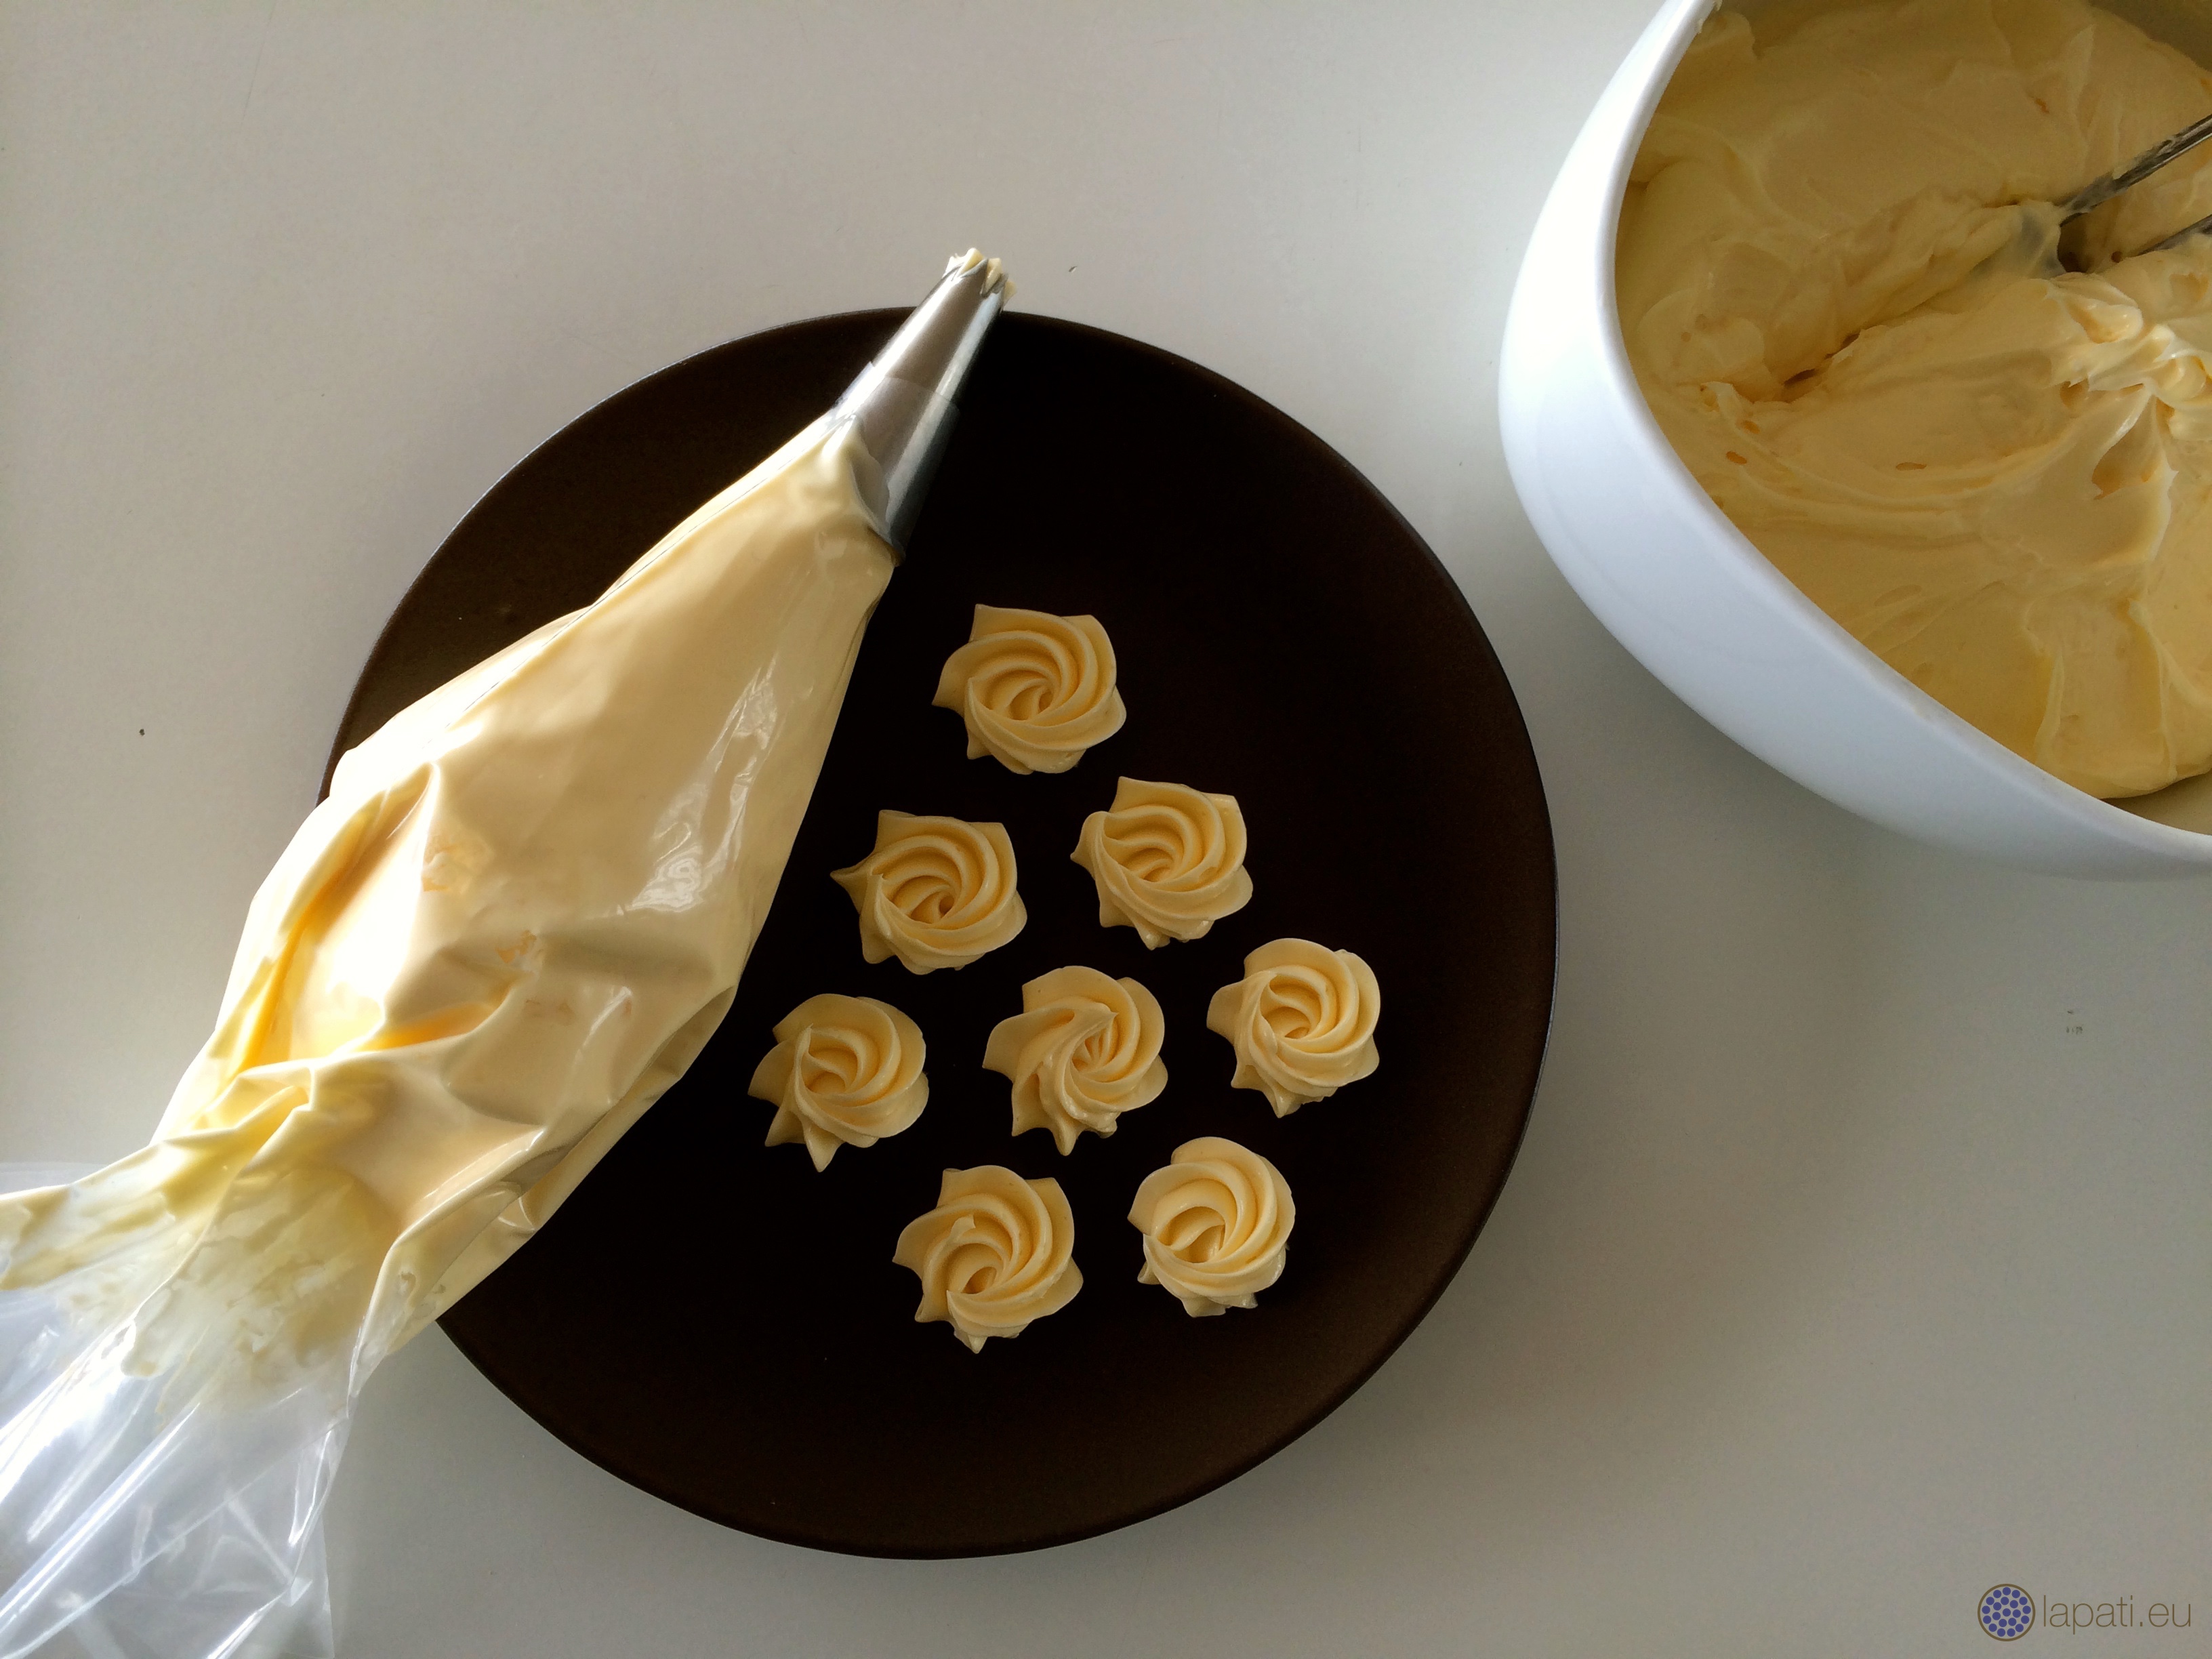 Französische Buttercreme – Grundwissen für Pâtissiers #1 – LAPÂTISSERIE